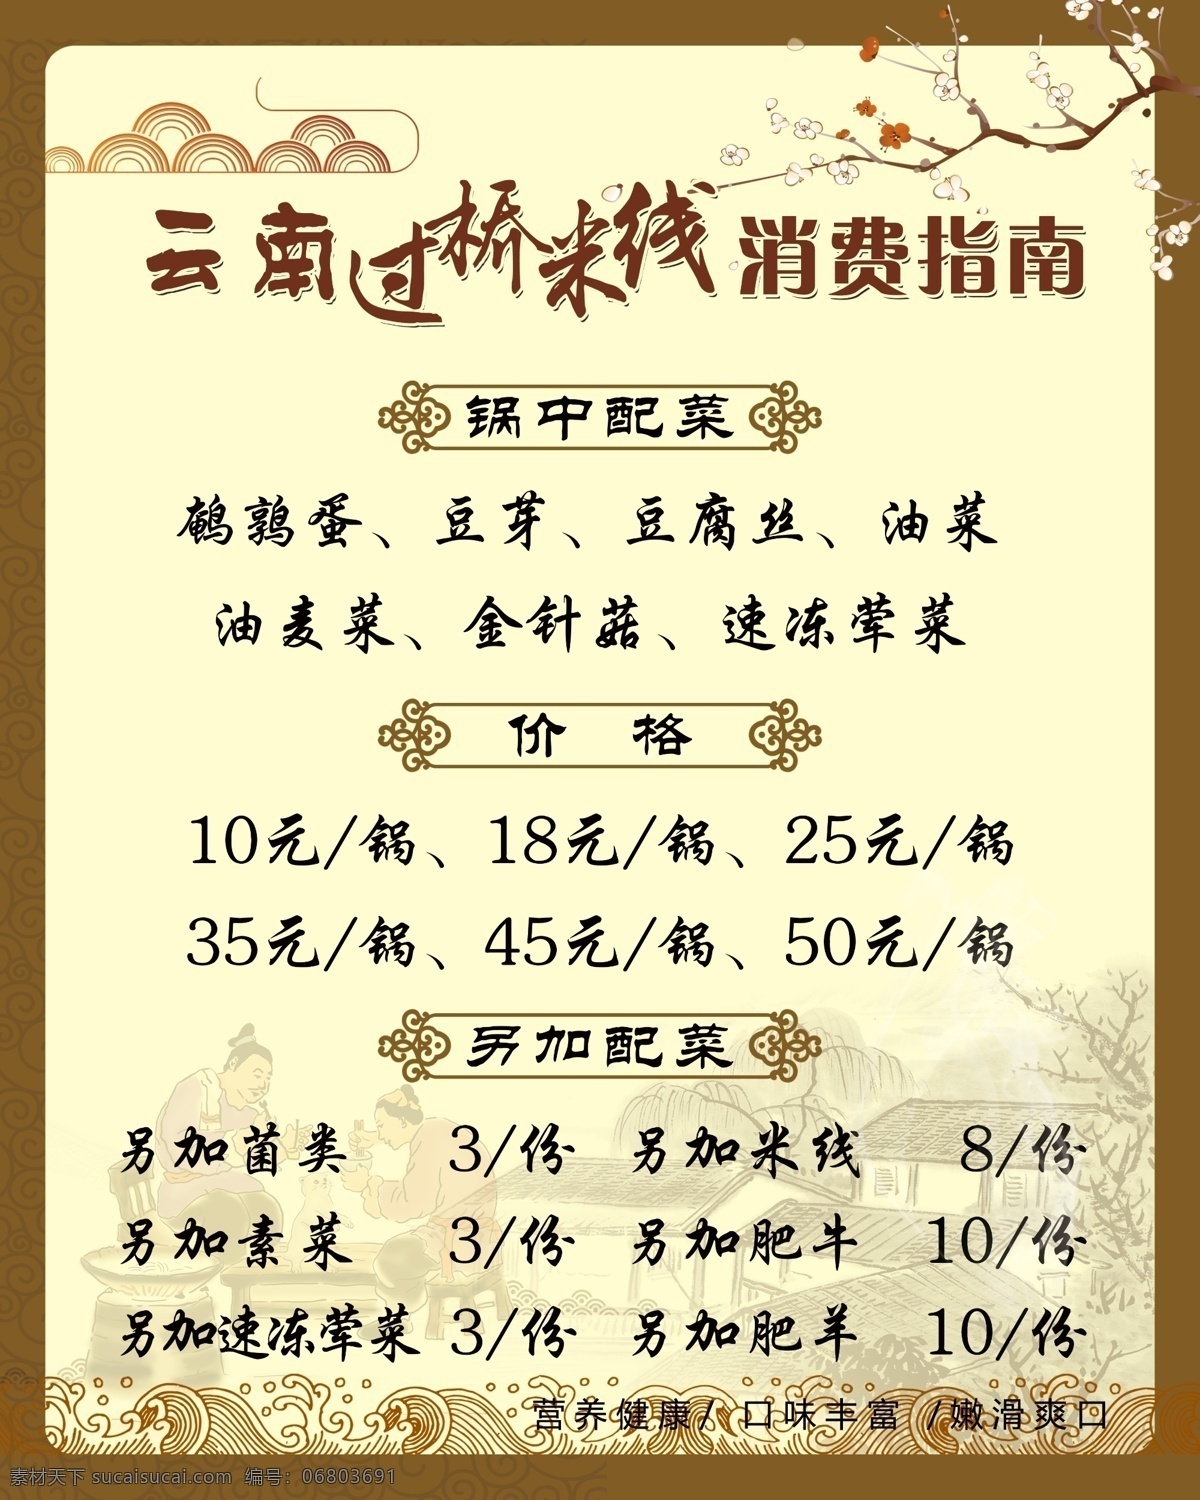 米线 价目表 过桥米线 价日表 消费指南 中国风 分层